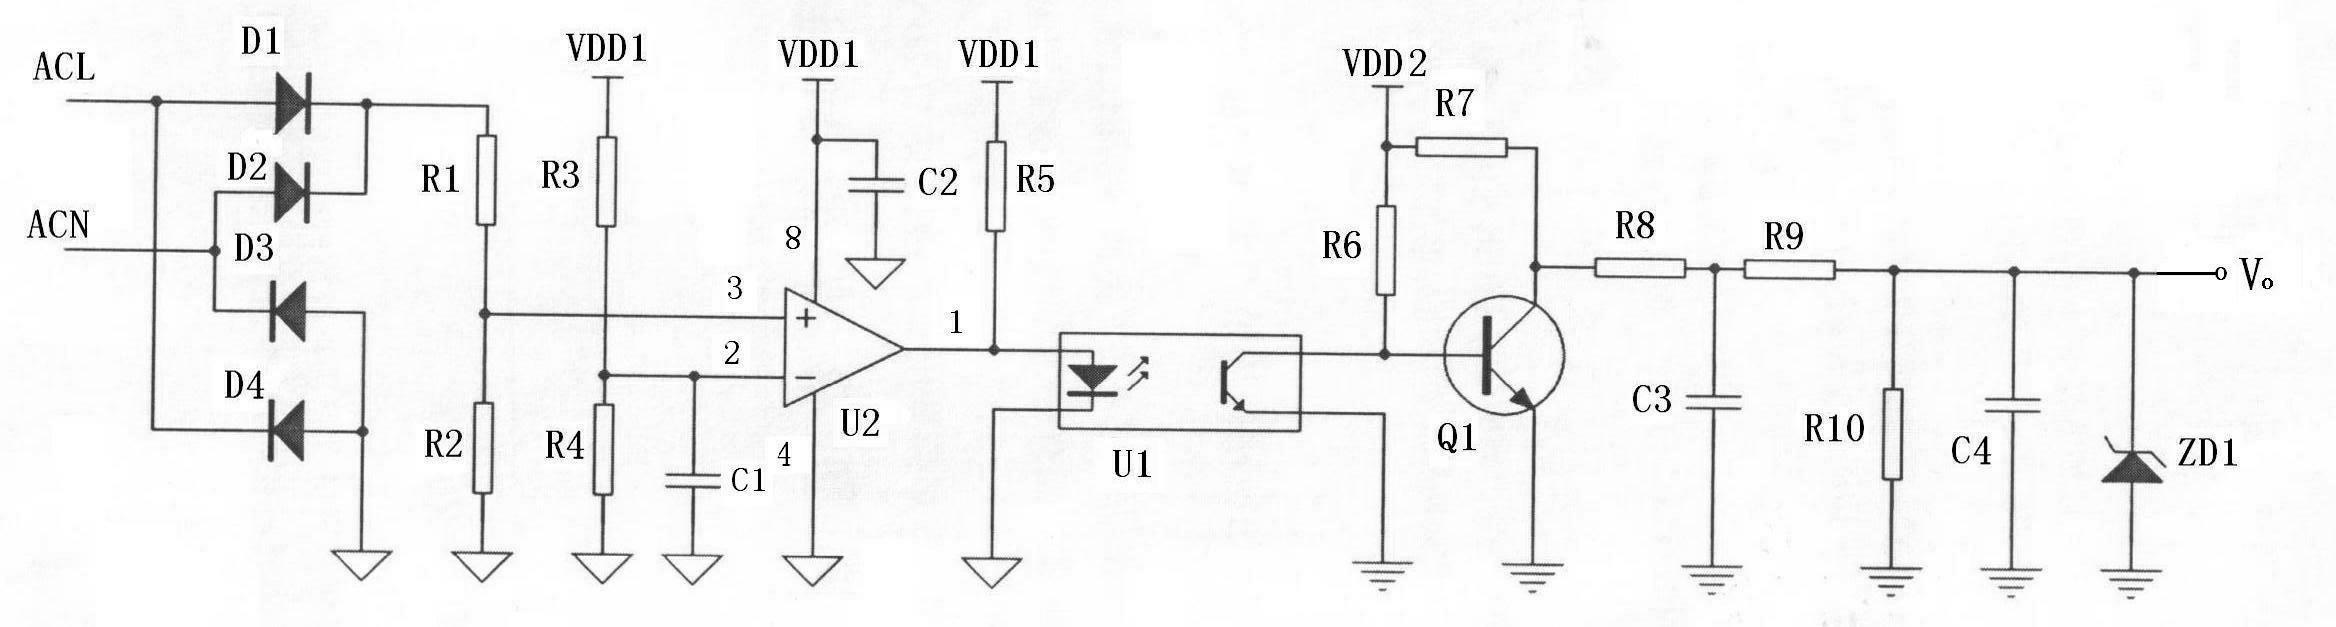 Voltage sampling circuit